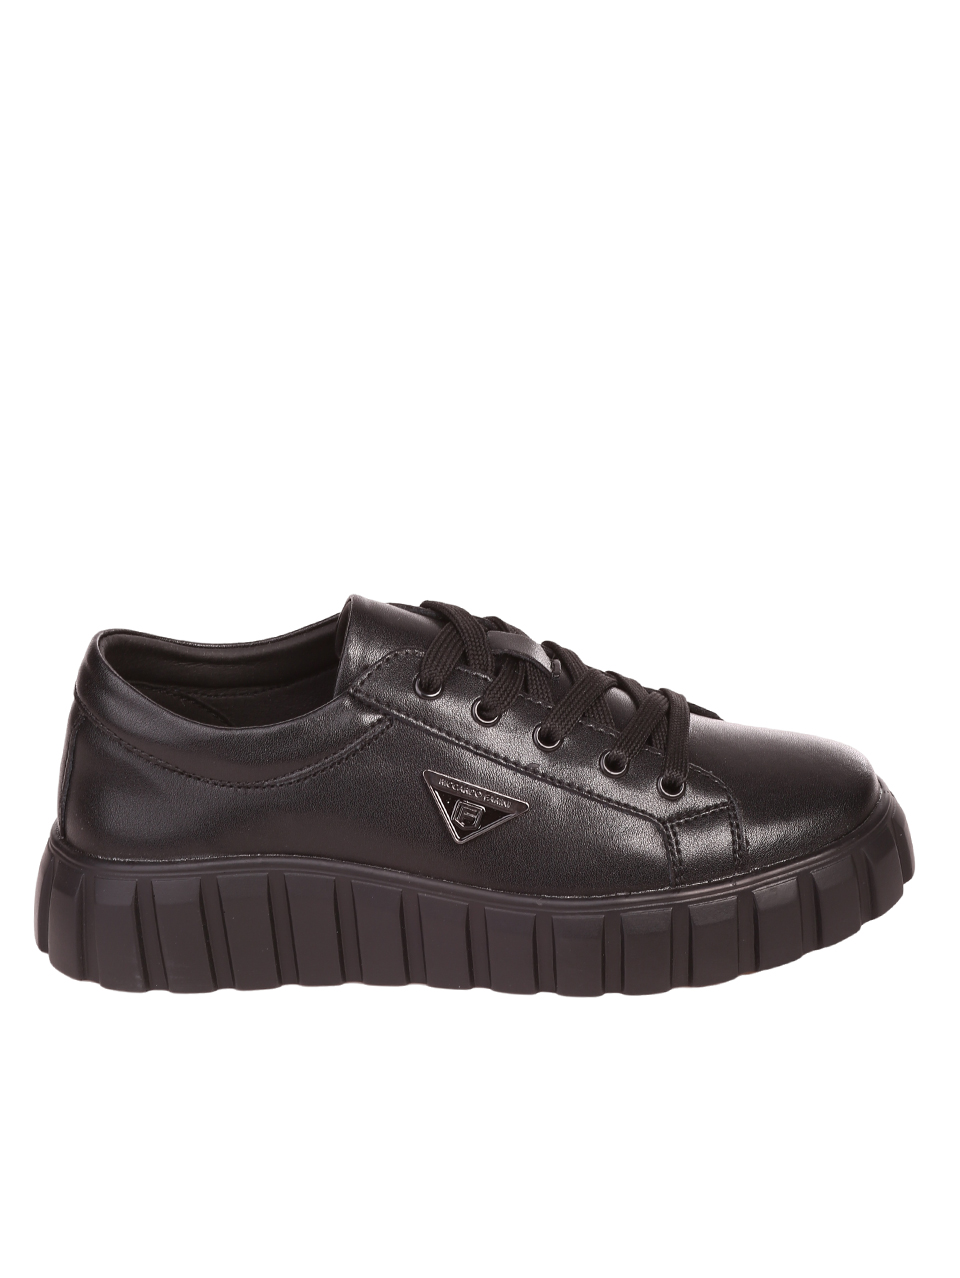 Ежедневни дамски обувки от естествена кожа в черно 3AF-23686 black